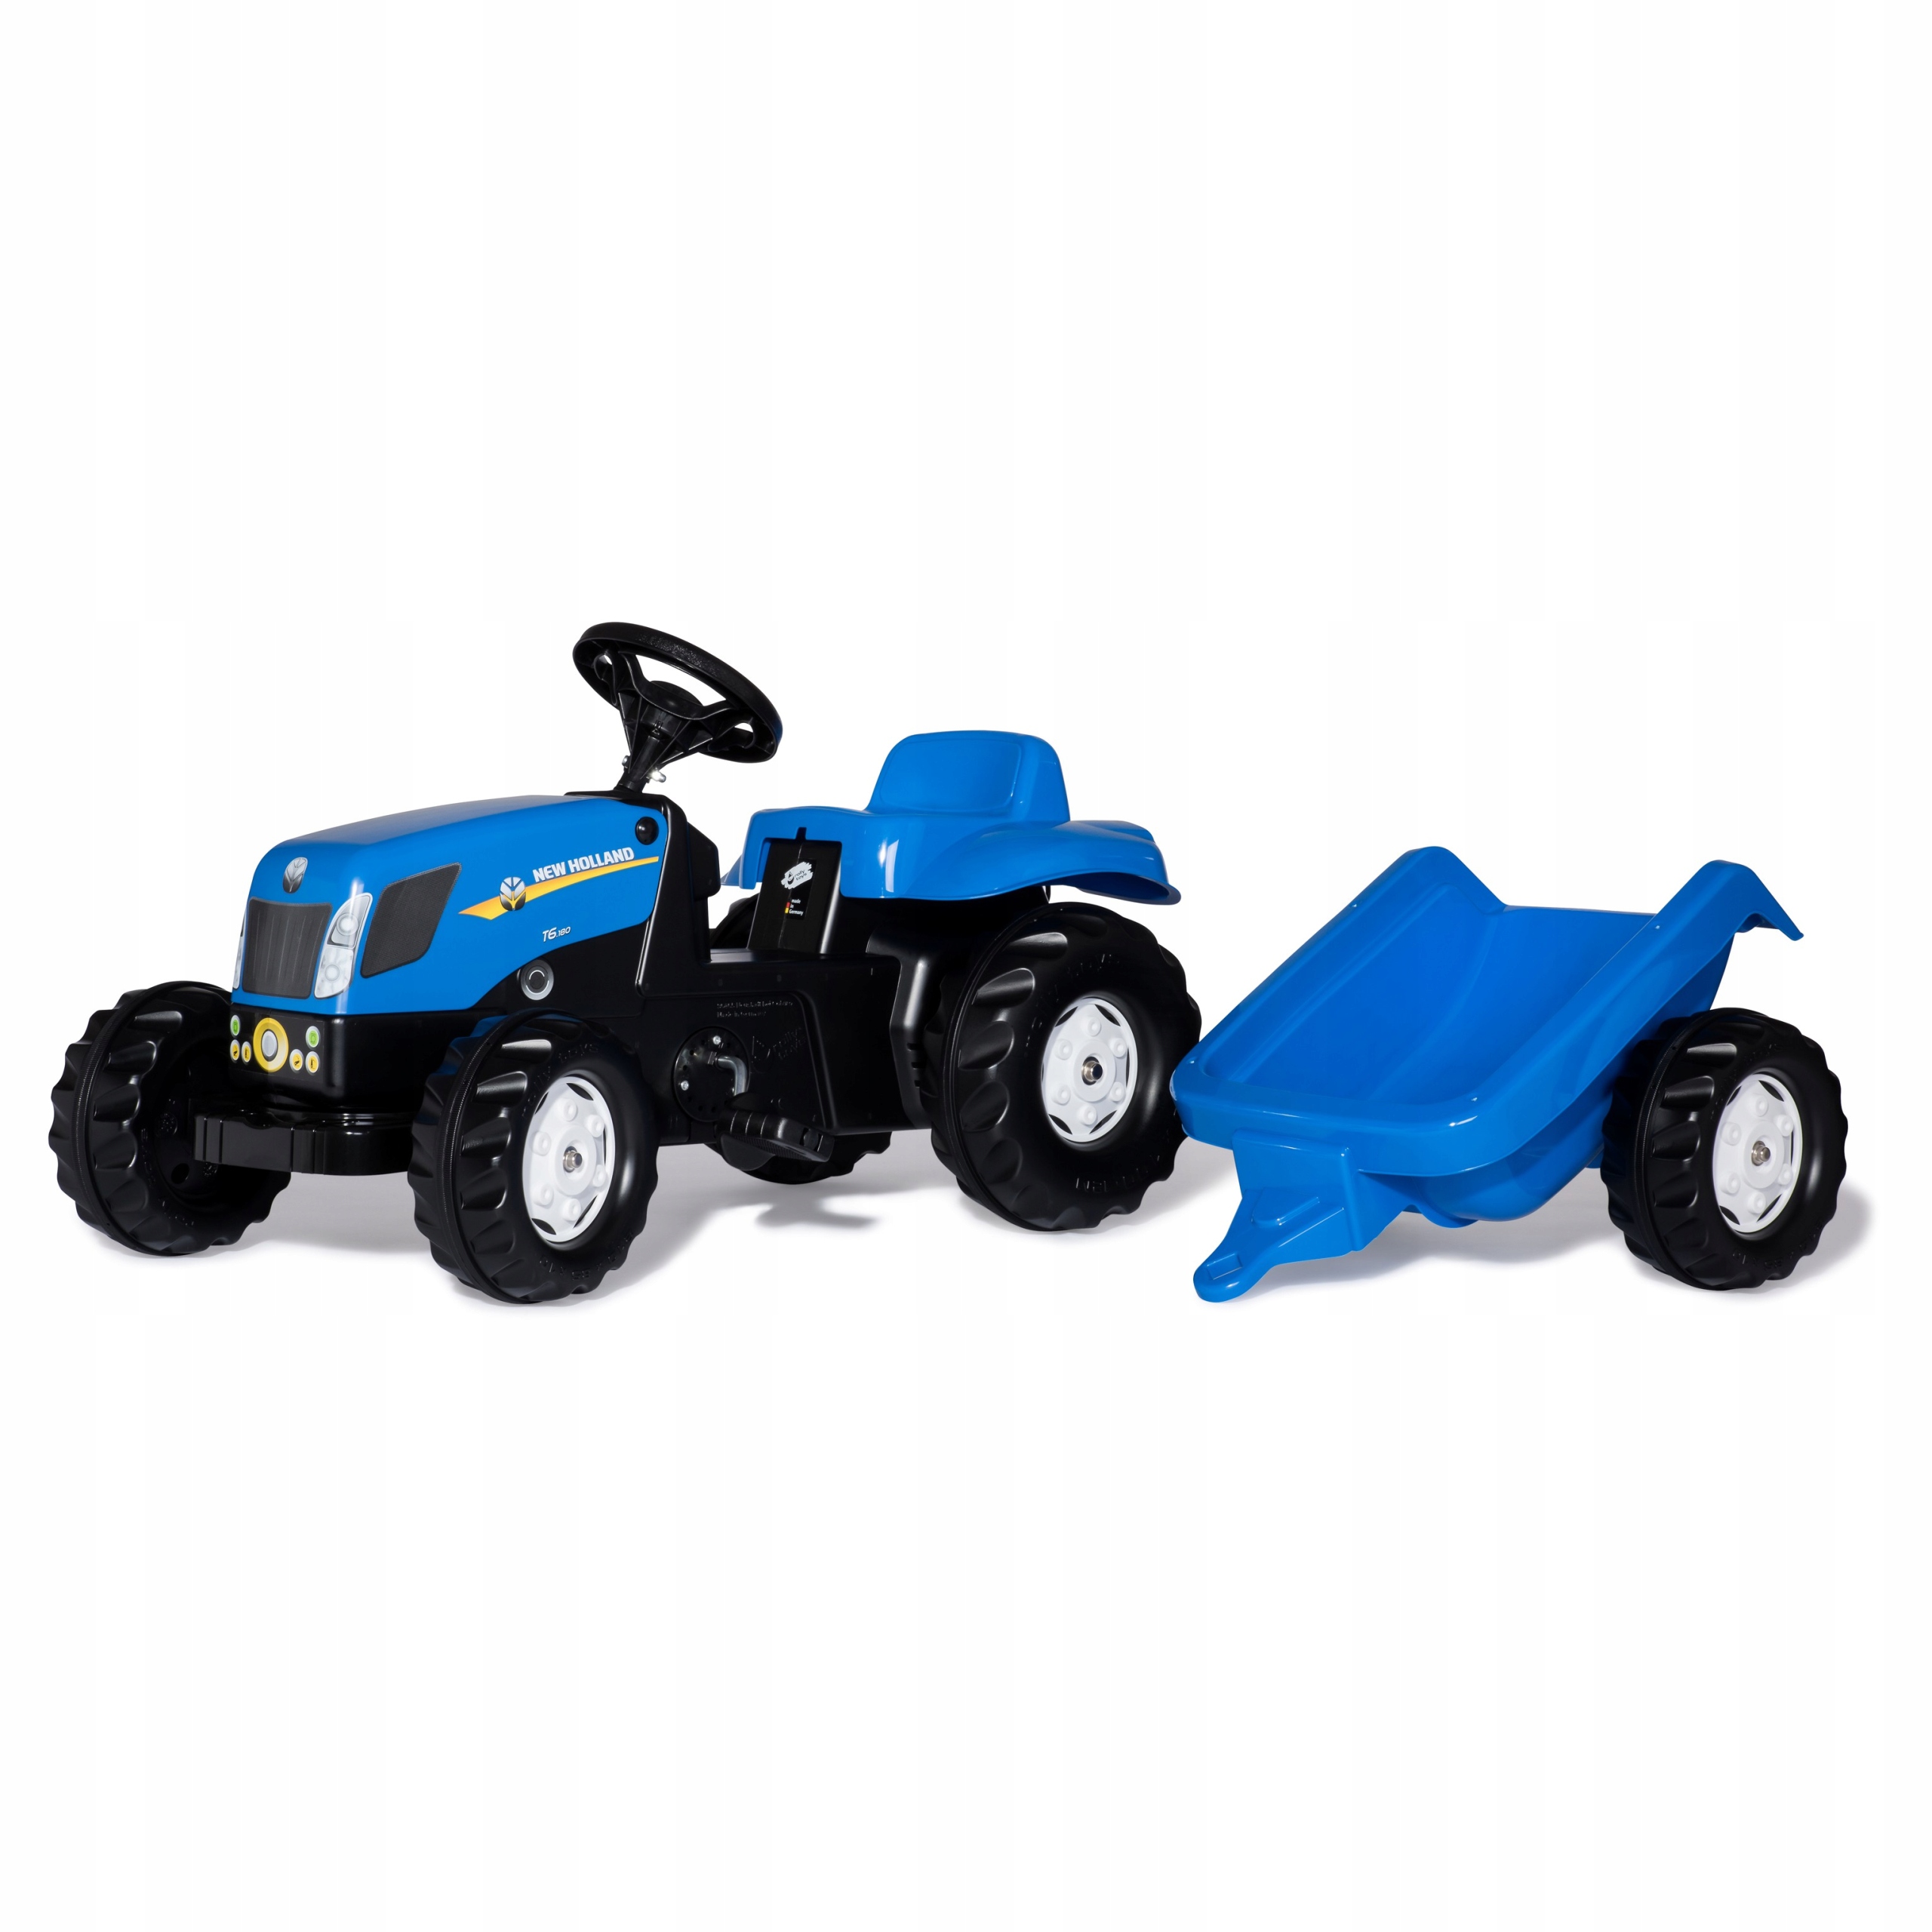 Трактор с педалями купить. Детский трактор Rolly Toys. Веломобиль Rolly Toys Kid New Holland t7040. Rolly Toys педальный трактор. Детский педальный трактор Rolly Toys ROLLYKID-X 023127.